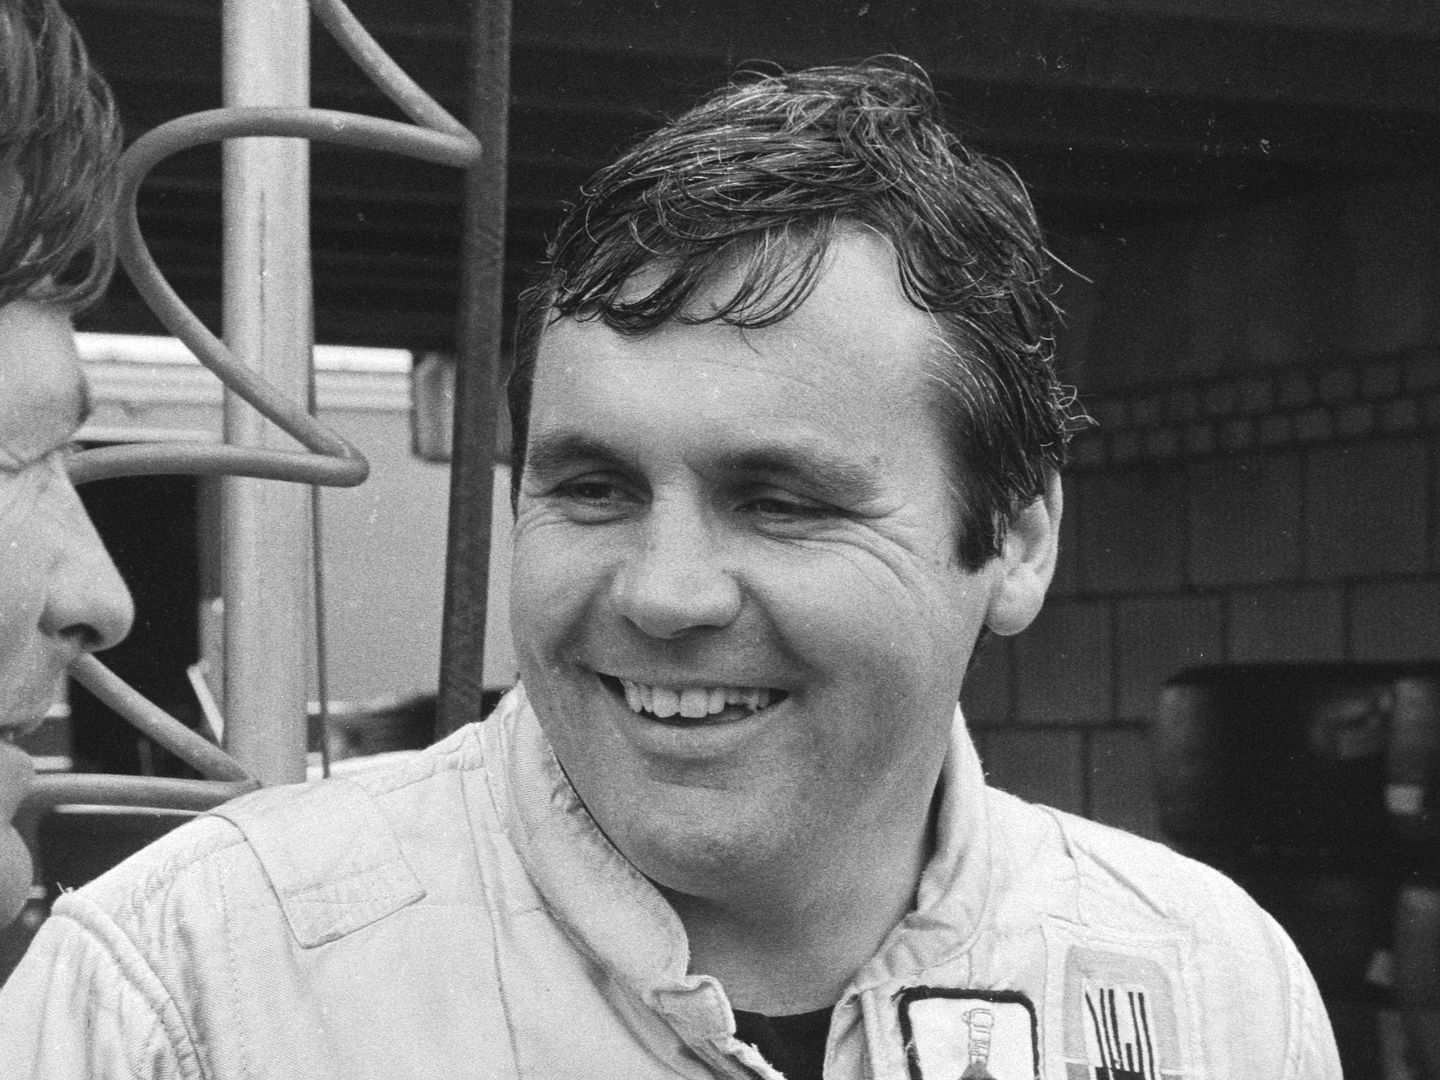 El australiano Alain Jones, uno de los pilotos con mayor fama de duro en la Fórmula 1, odiaba Imola